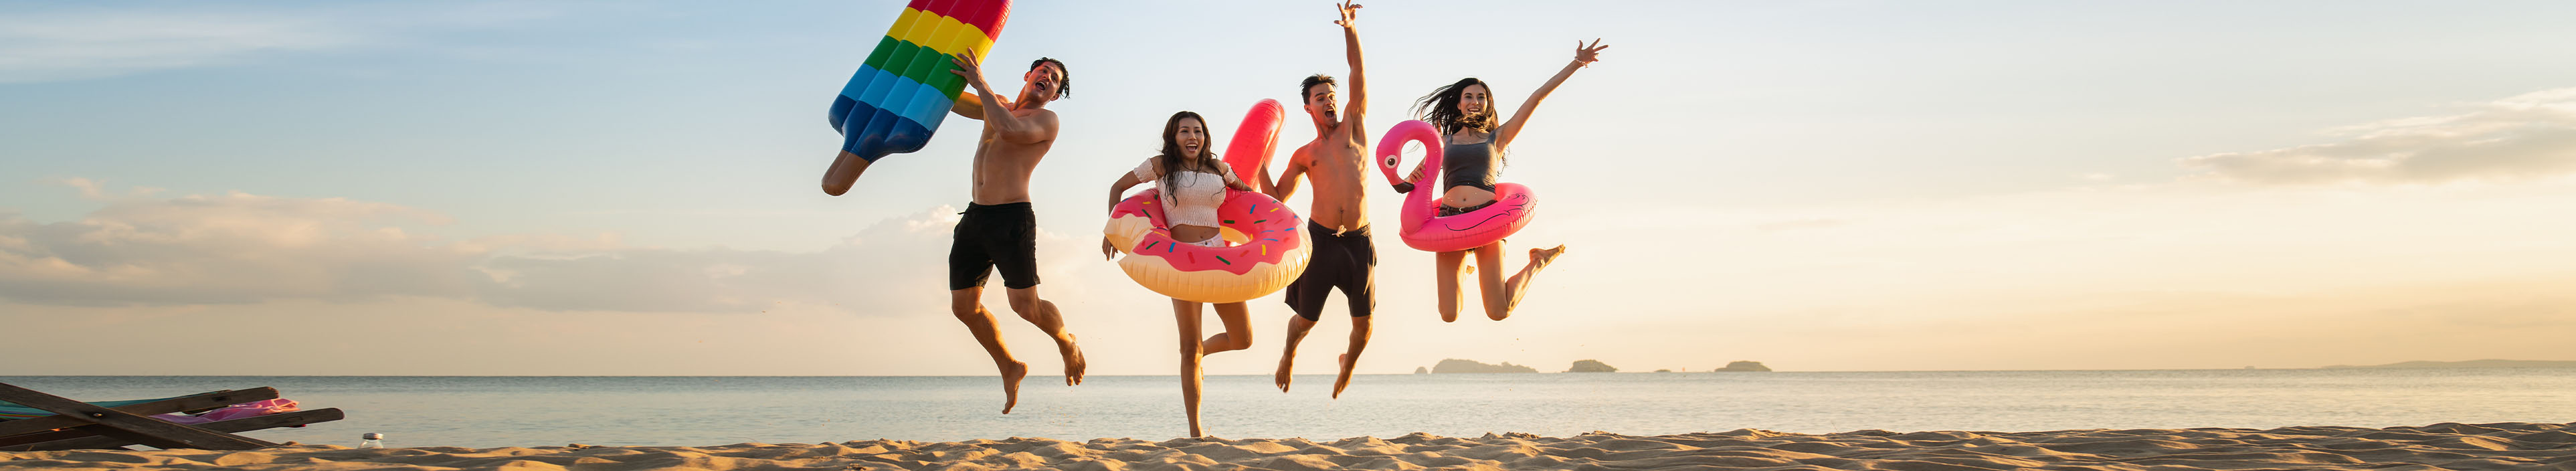 Eine Gruppe von Freunden springt am Strand in die Luft.